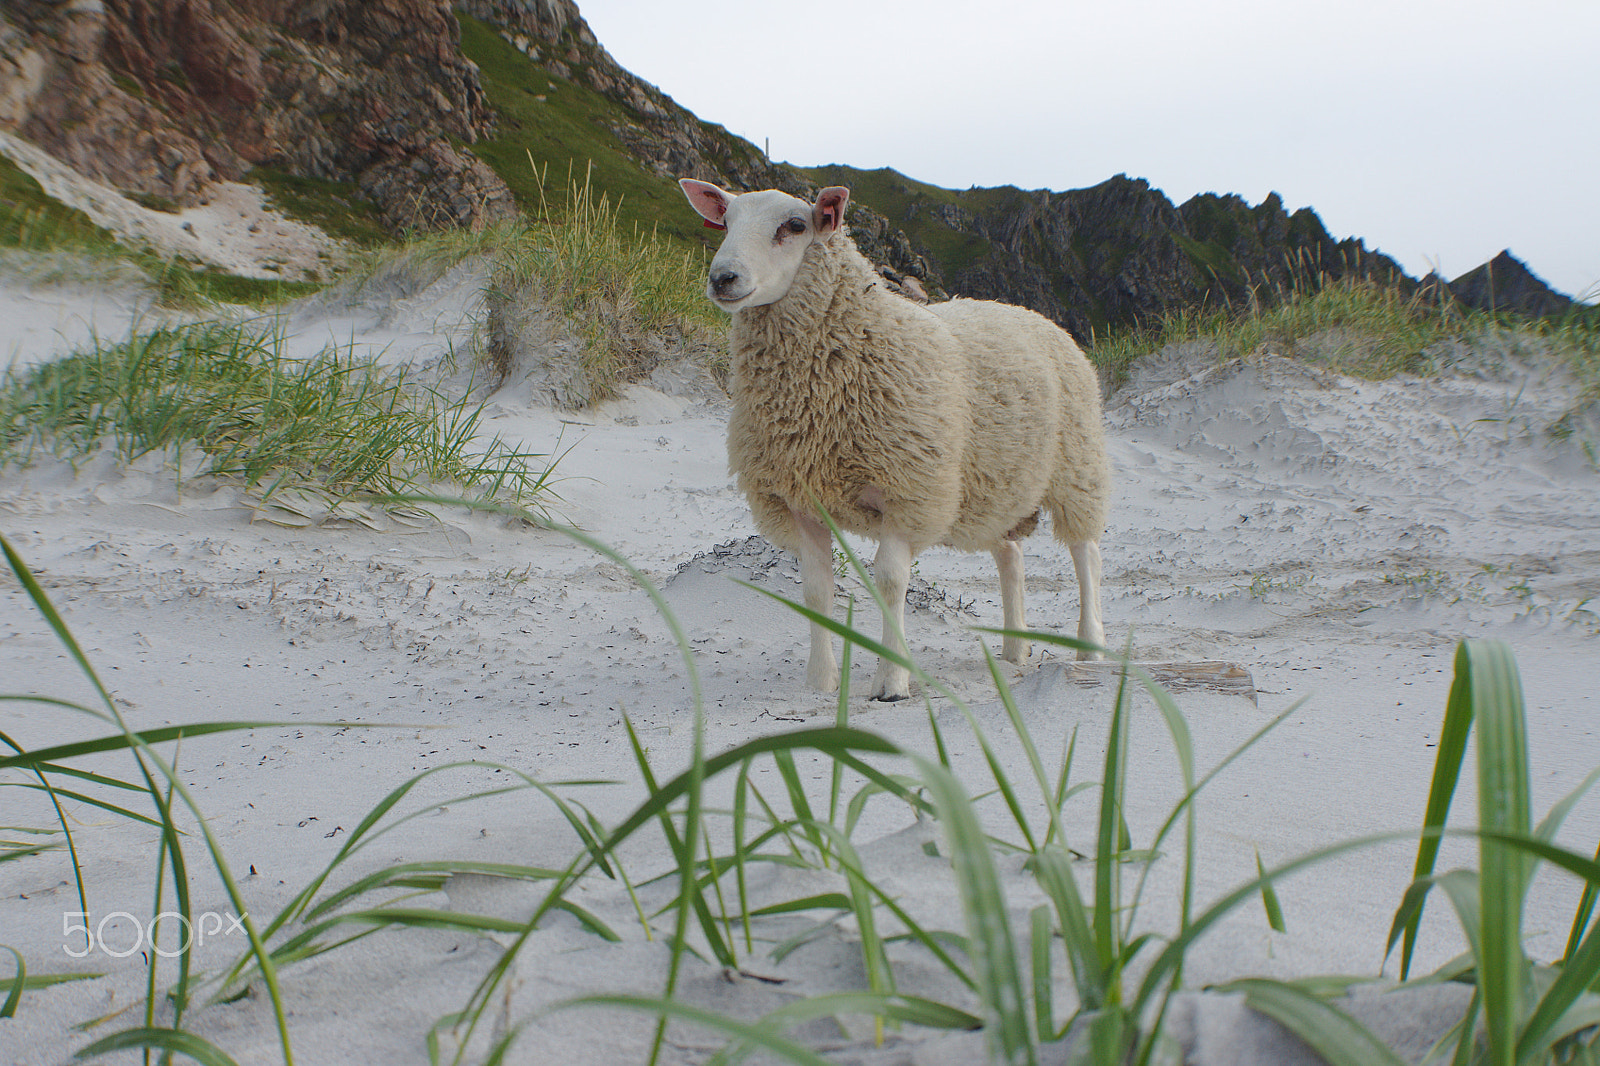 Sony Alpha DSLR-A500 sample photo. Lamb on the beach photography